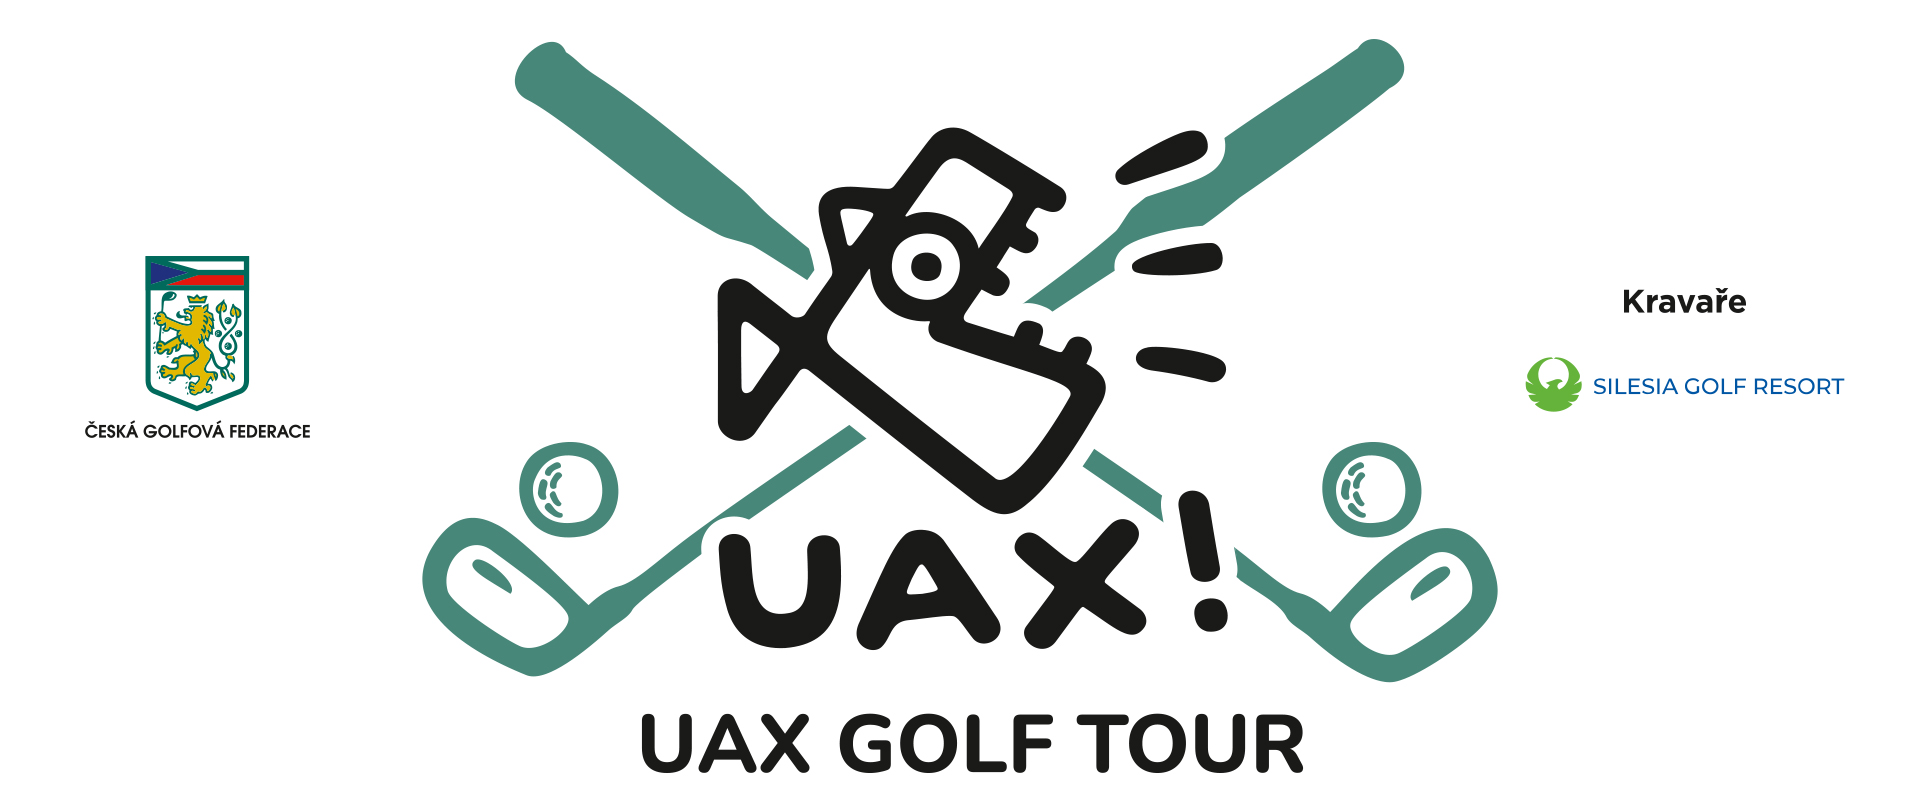 UAX Golf Tour Kravaře